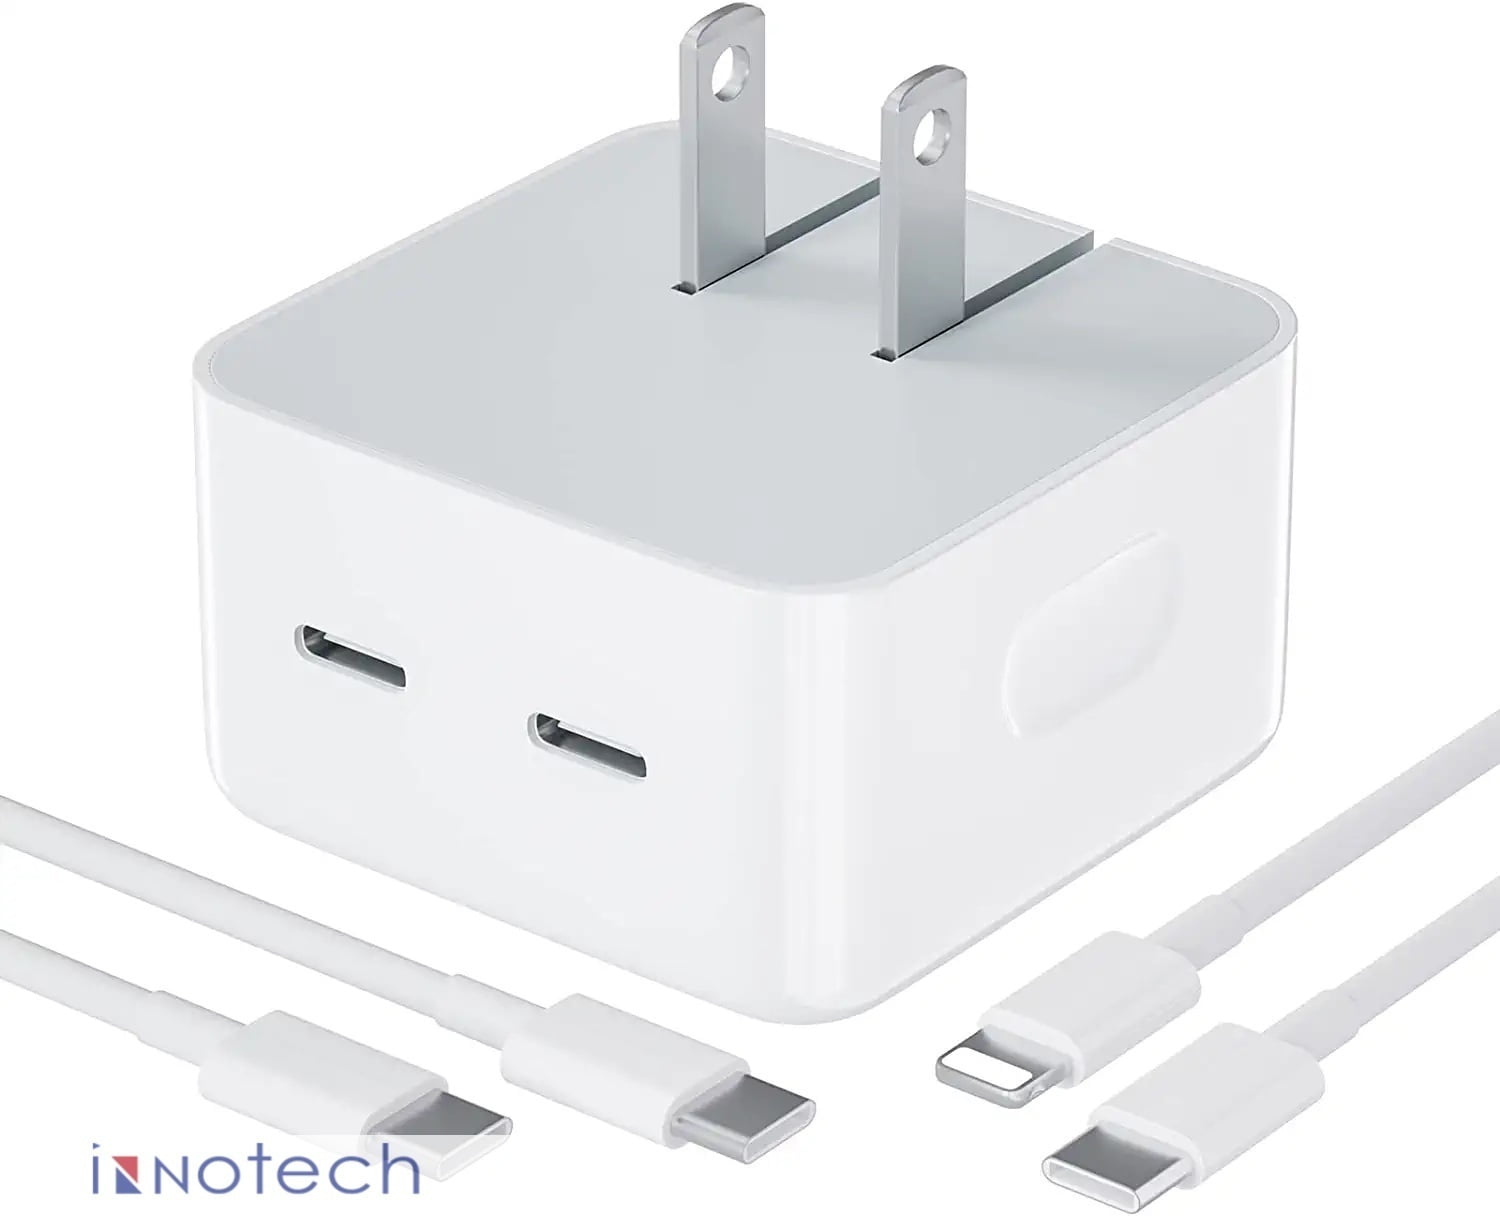 Chargeur certifié iPhone 15 + câble USB C - 1 mètre - Dual USB-C - 35 Watt  - Power